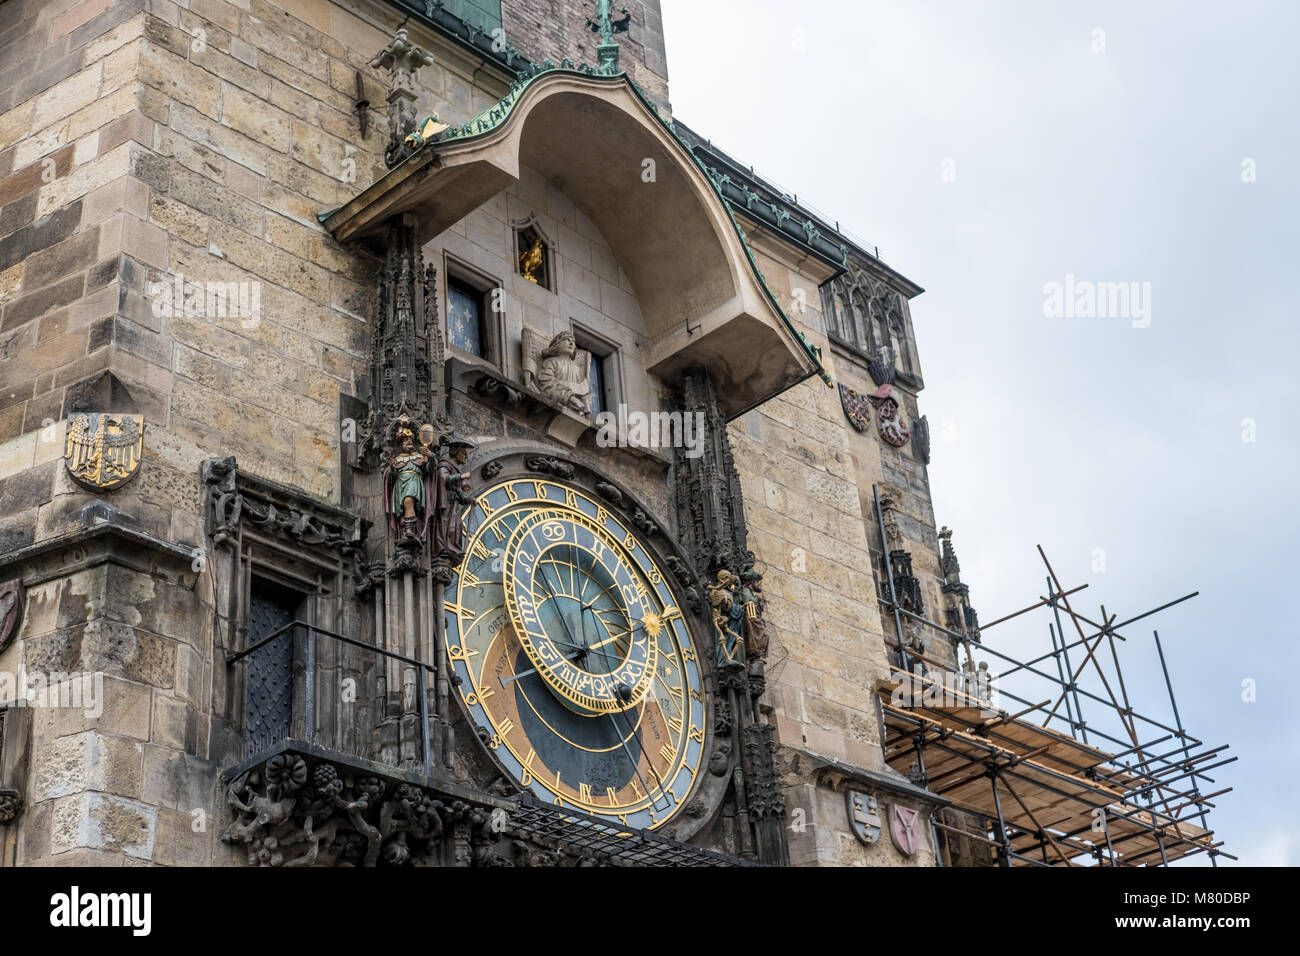 Astronomische Uhr, oder Prager Orloj, einem mittelalterlichen, Astronomische Uhr in Prag, der Hauptstadt der Tschechischen Republik. Stockfoto